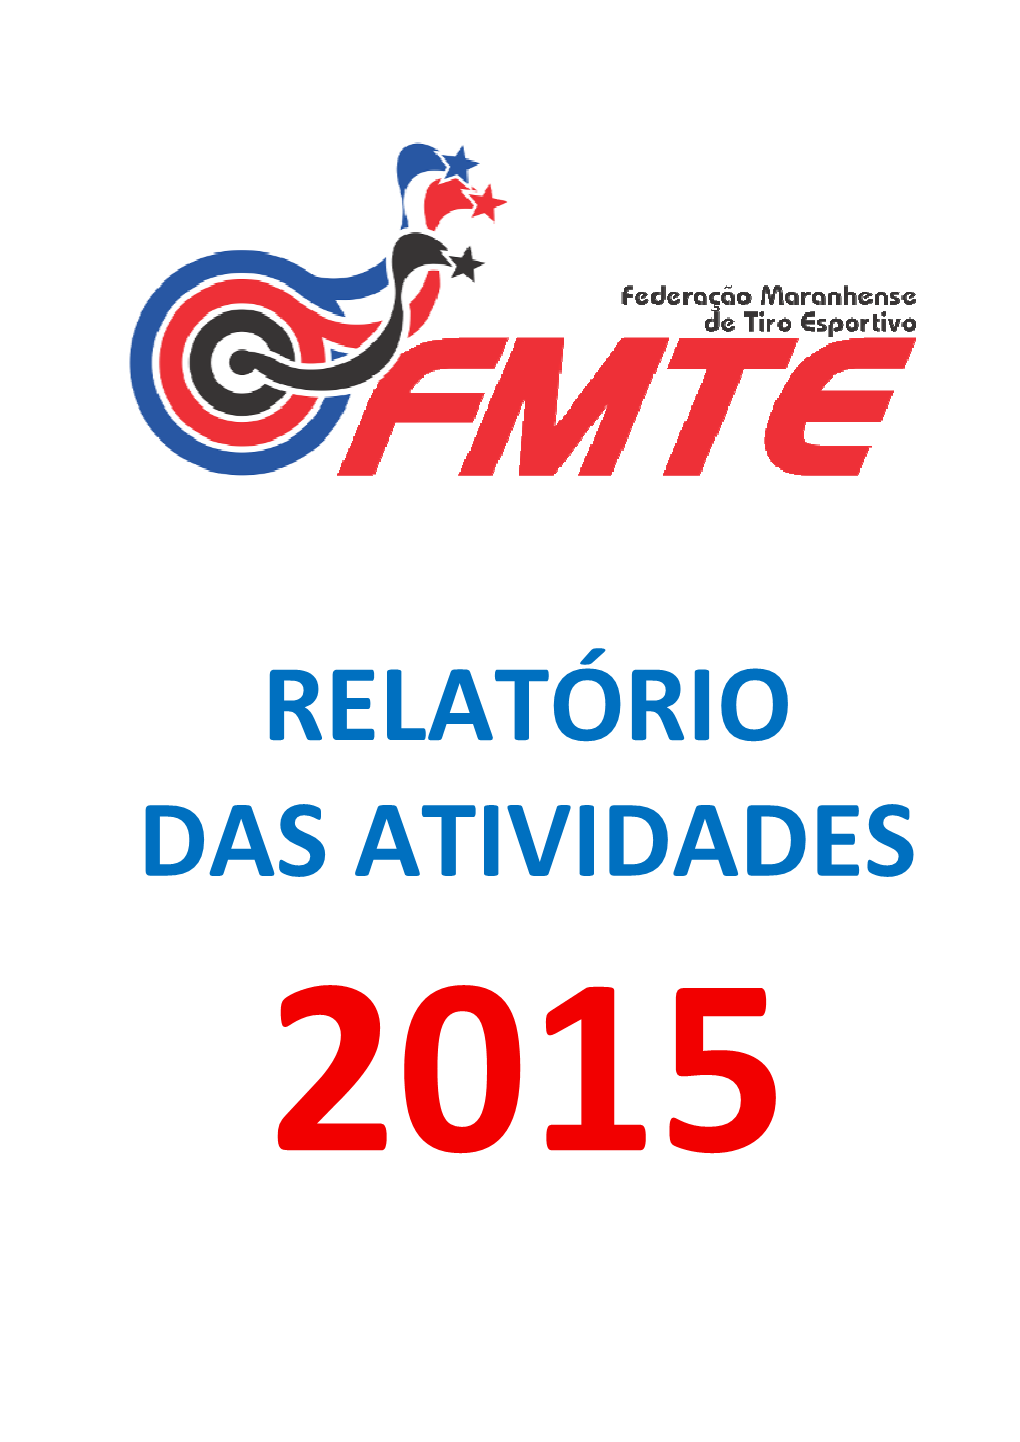 RELATÓRIO DAS ATIVIDADES 2015 Relatório Das Atividades Da Federação Maranhense De Tiro Esportivo Exercício 2015